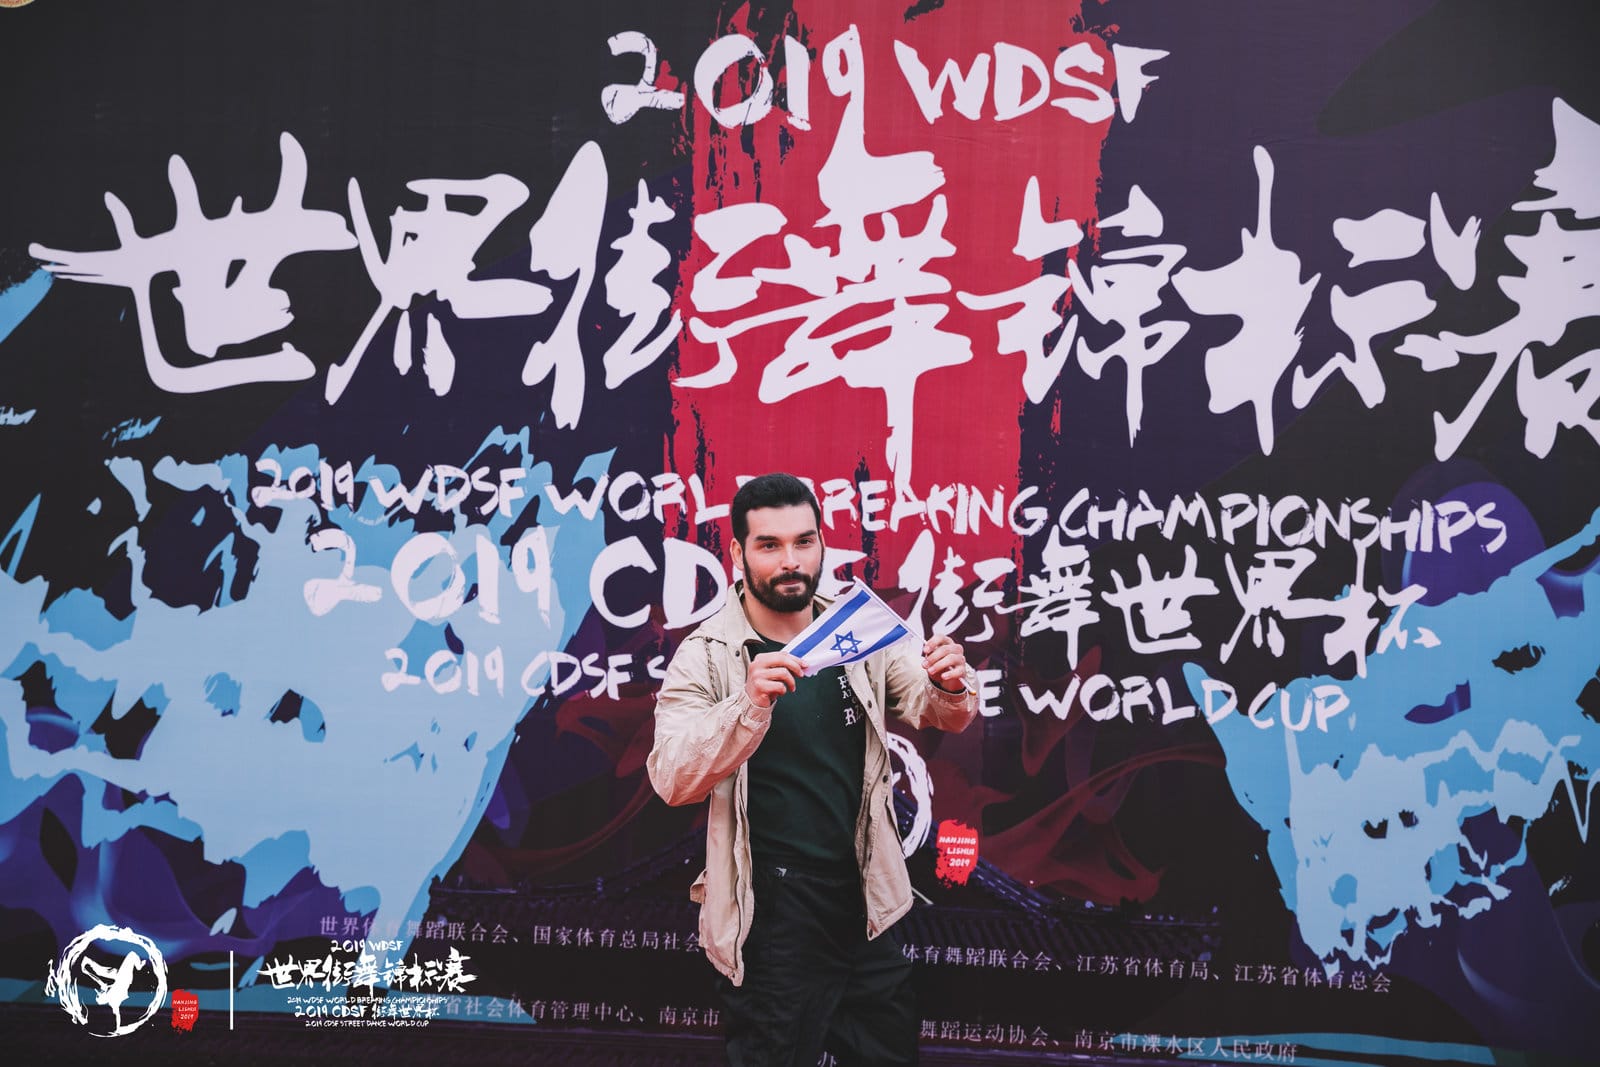 יעקב קרבץ (פוטר) באליפות העולם בסין | קרדיט: WDSF